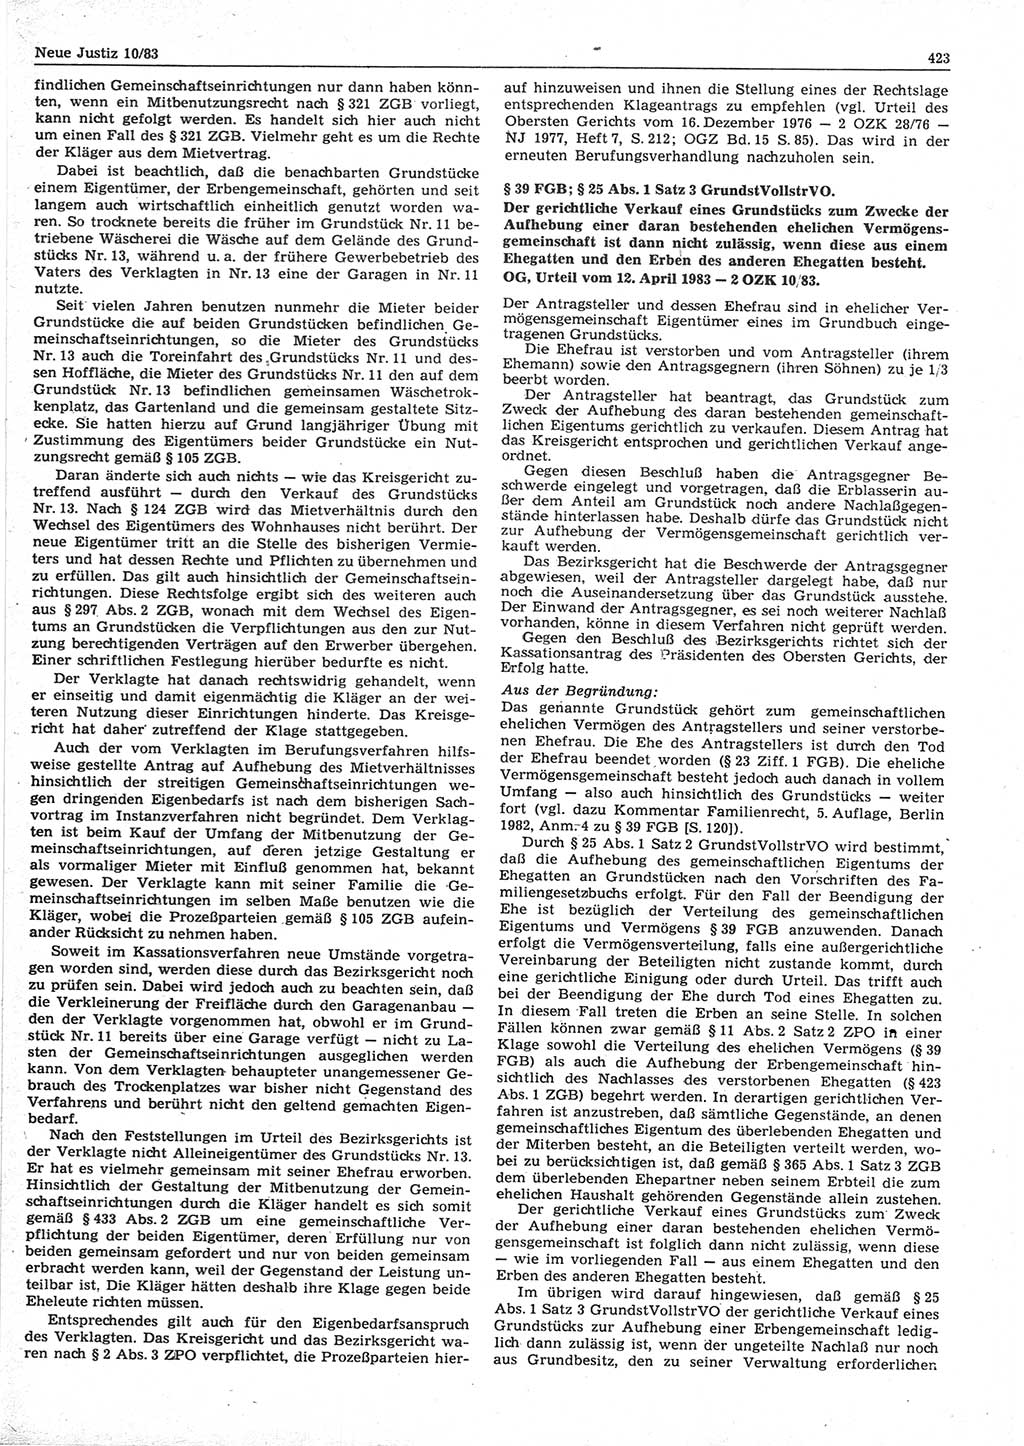 Neue Justiz (NJ), Zeitschrift für sozialistisches Recht und Gesetzlichkeit [Deutsche Demokratische Republik (DDR)], 37. Jahrgang 1983, Seite 423 (NJ DDR 1983, S. 423)